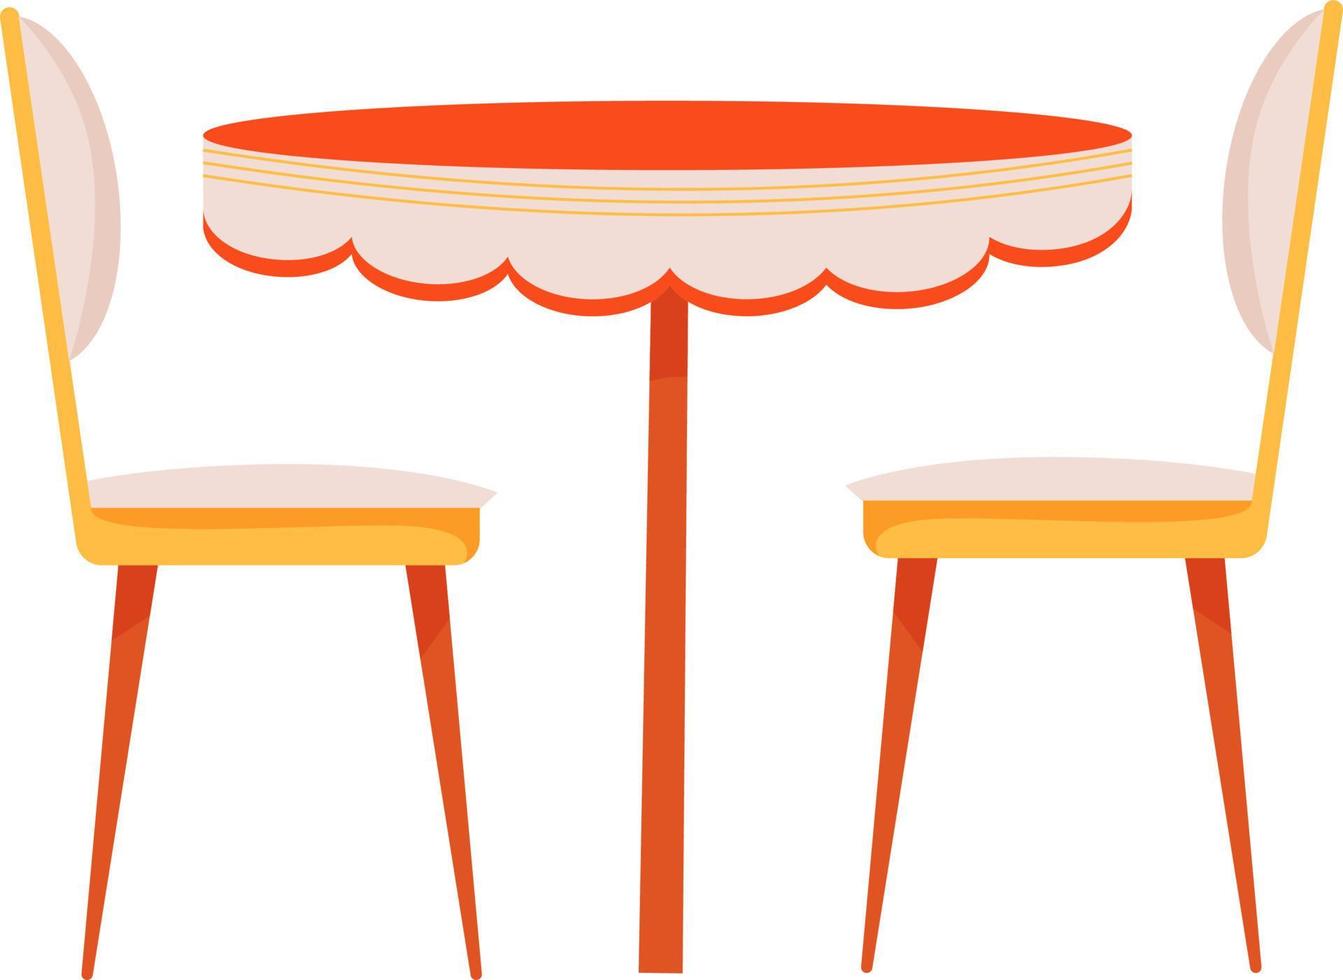 Esstisch mit gepolsterten Stühlen halbflaches Farbvektorobjekt vektor